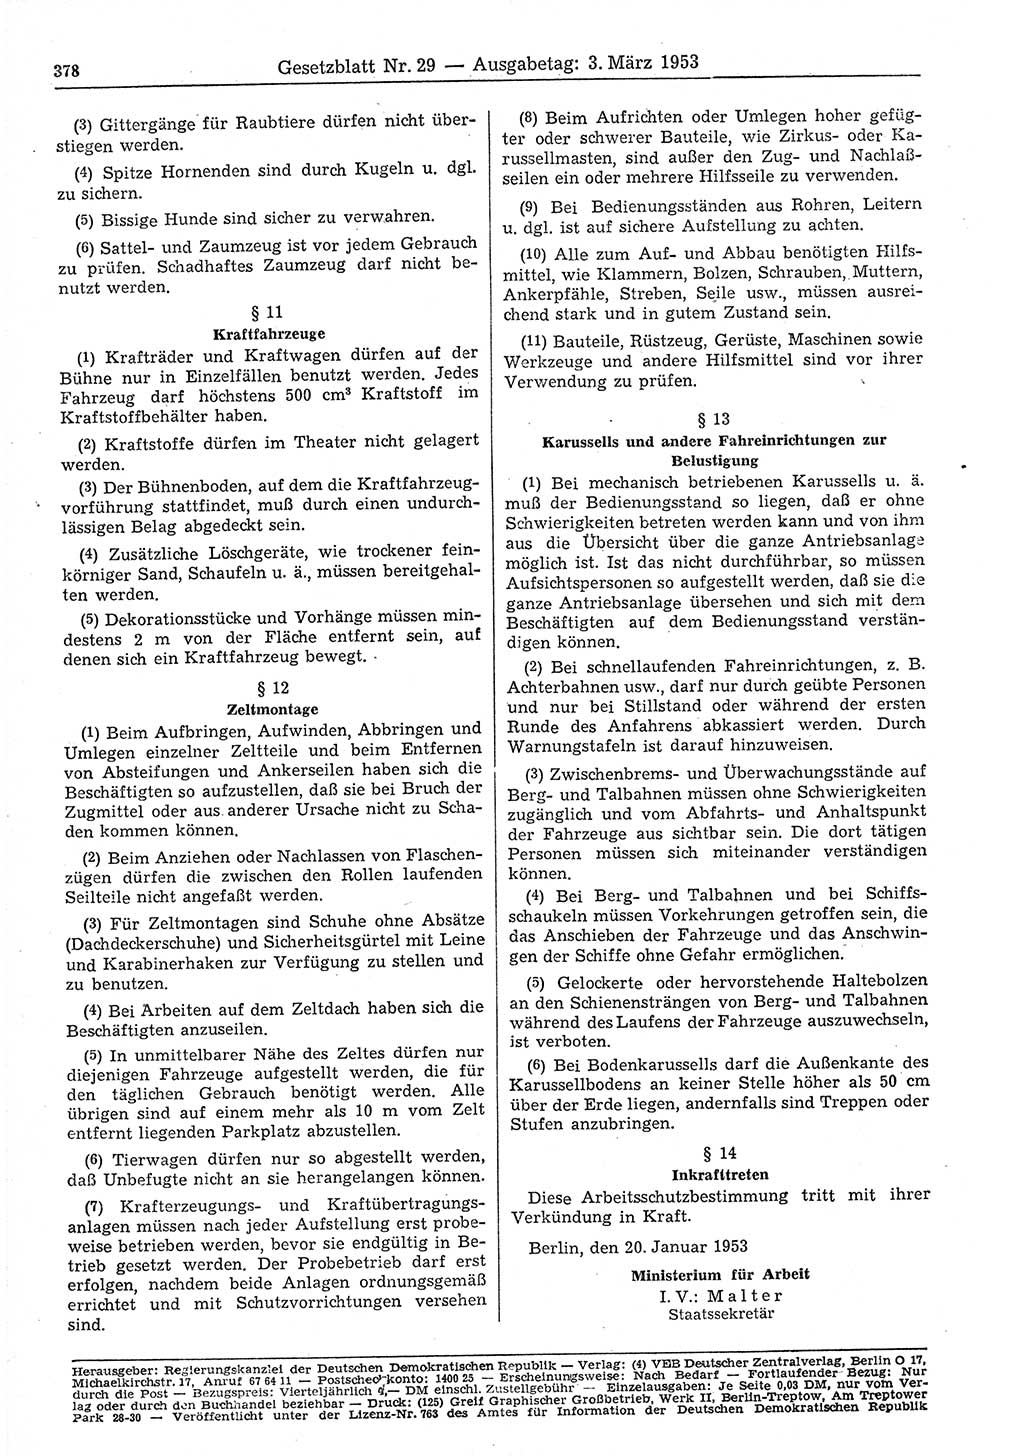 Gesetzblatt (GBl.) der Deutschen Demokratischen Republik (DDR) 1953, Seite 378 (GBl. DDR 1953, S. 378)